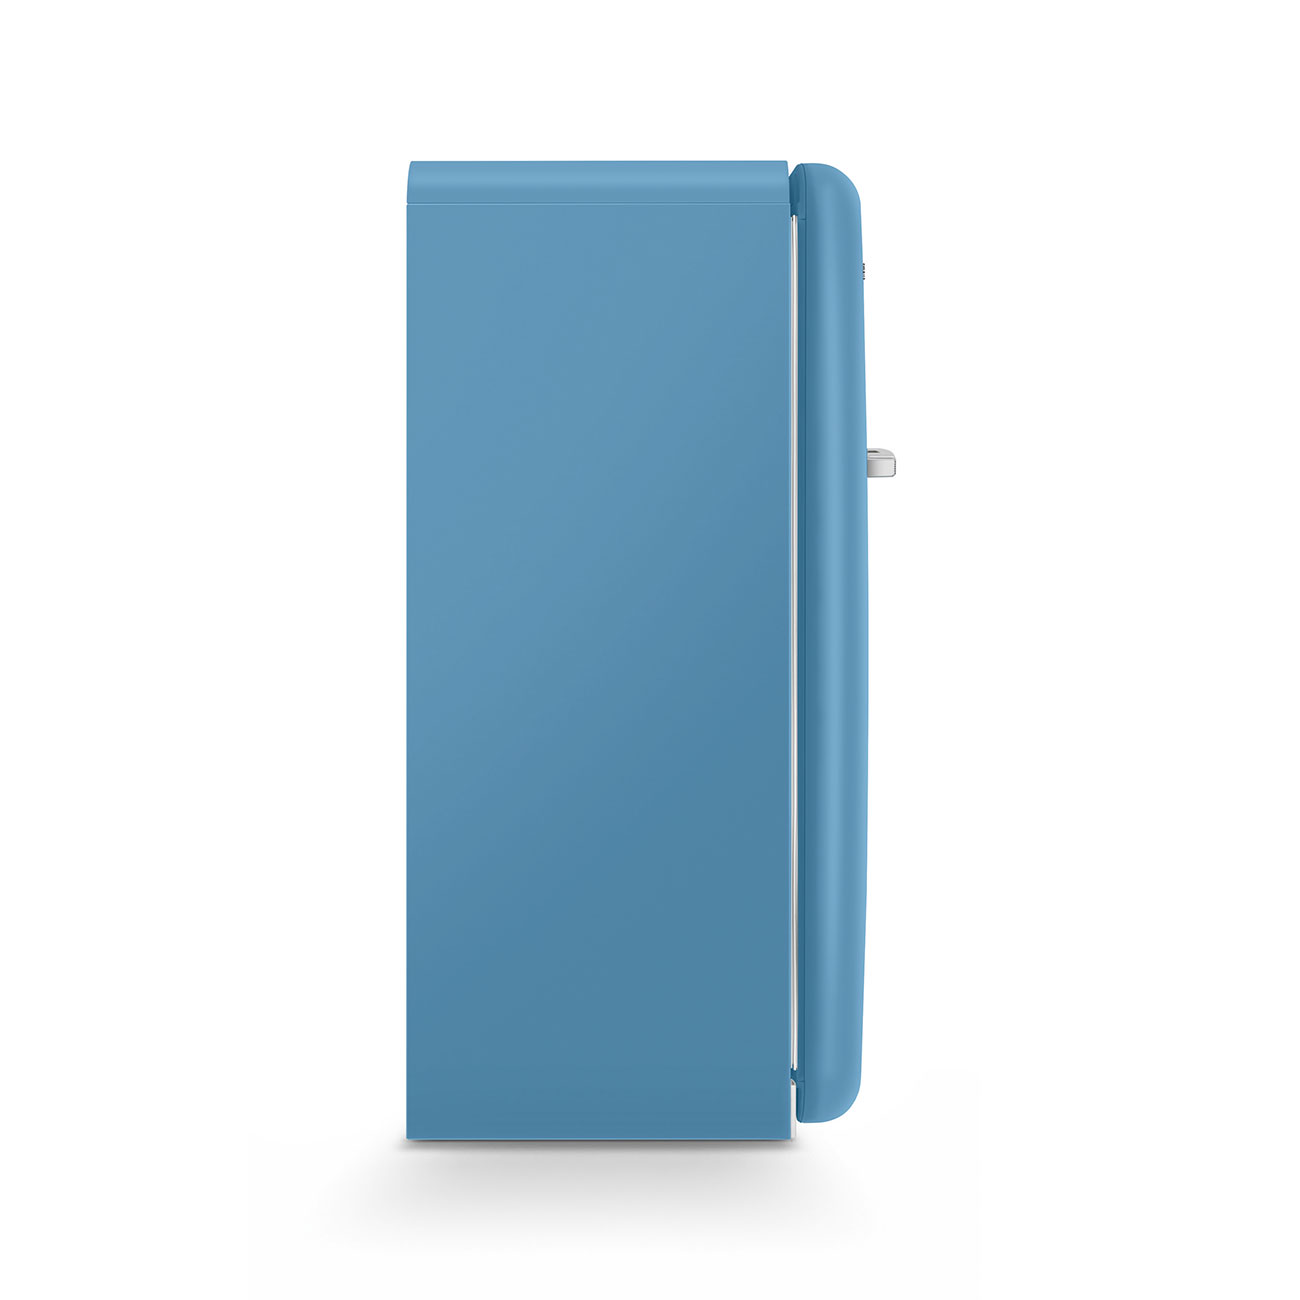 Light Blue refrigerator - Smeg_8